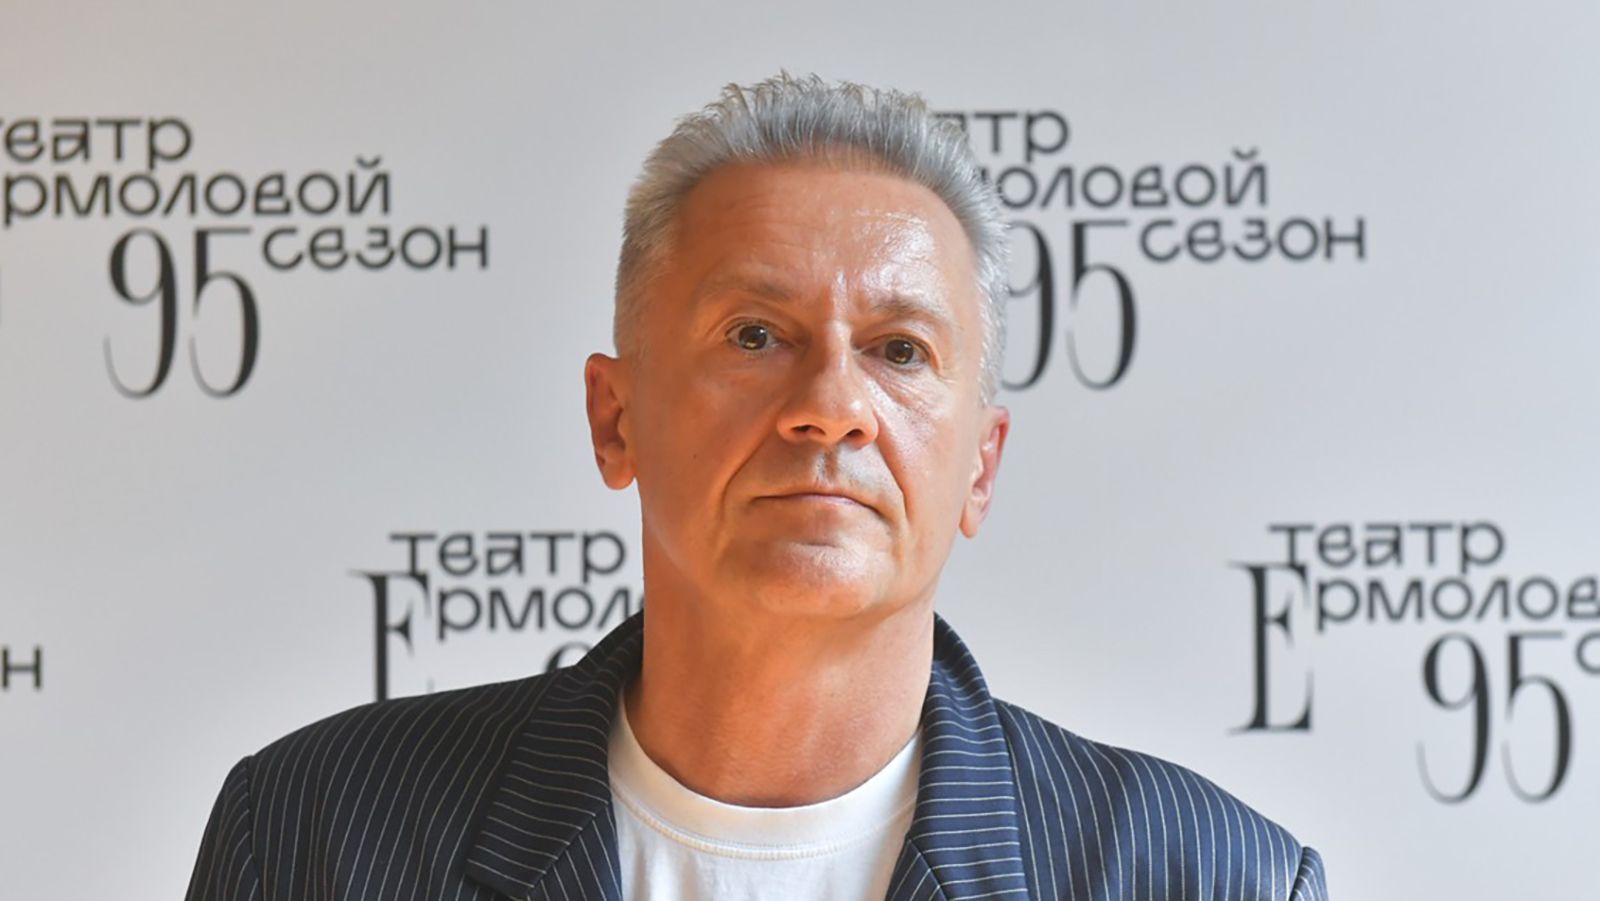 Актер Меньшиков собрал восторженные комментарии под новой фотографией